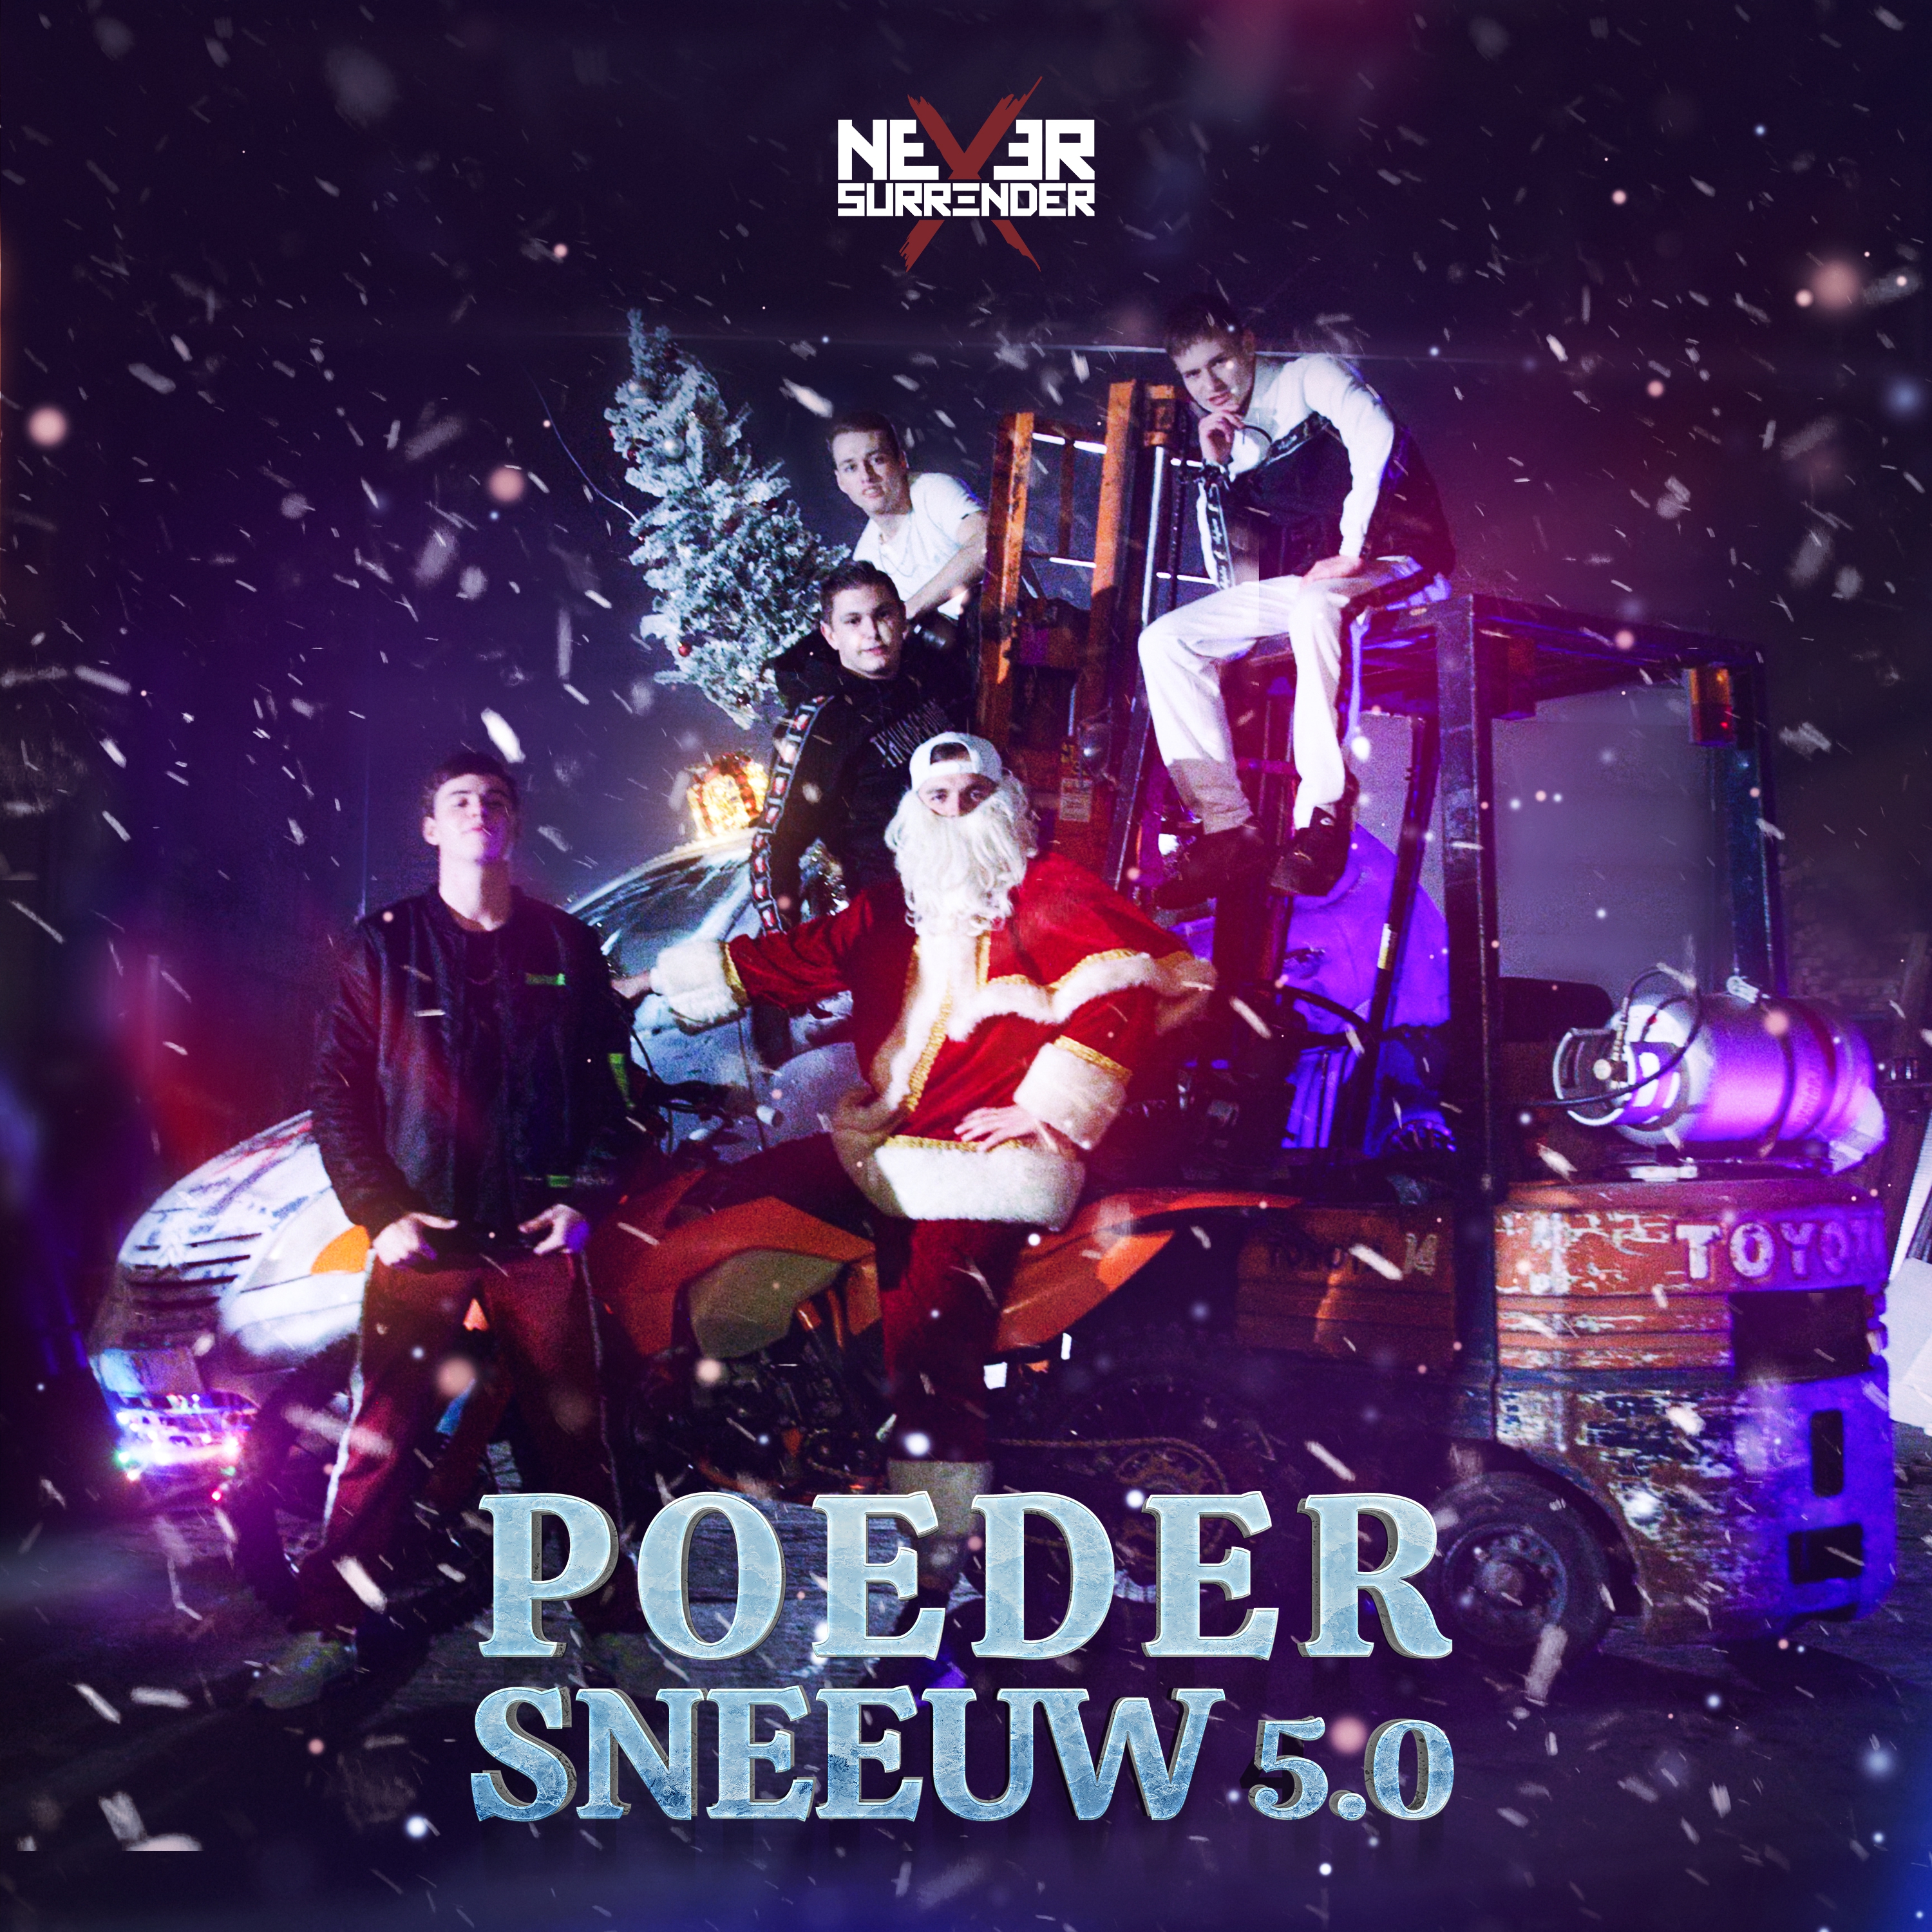 Never Surrender - Poedersneeuw 5.0 - MP3 And WAV Downloads At.